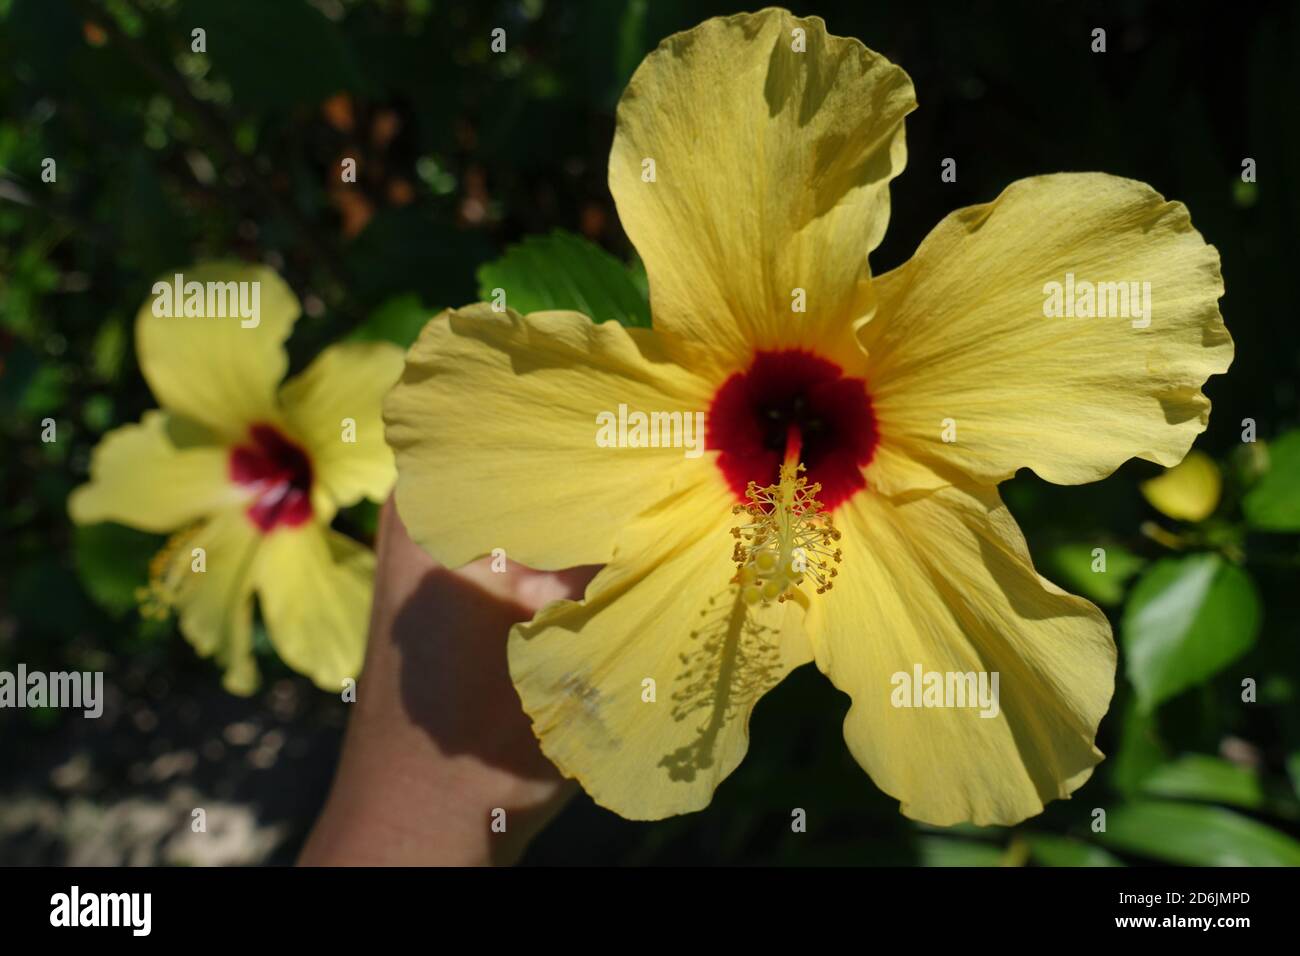 https://c8.alamy.com/comp/2D6JMPD/brazil-morro-de-sao-paulo-huge-colerful-yellow-hibiscus-hibiscus-brackenridgei-hawaiian-hibiscus-2D6JMPD.jpg